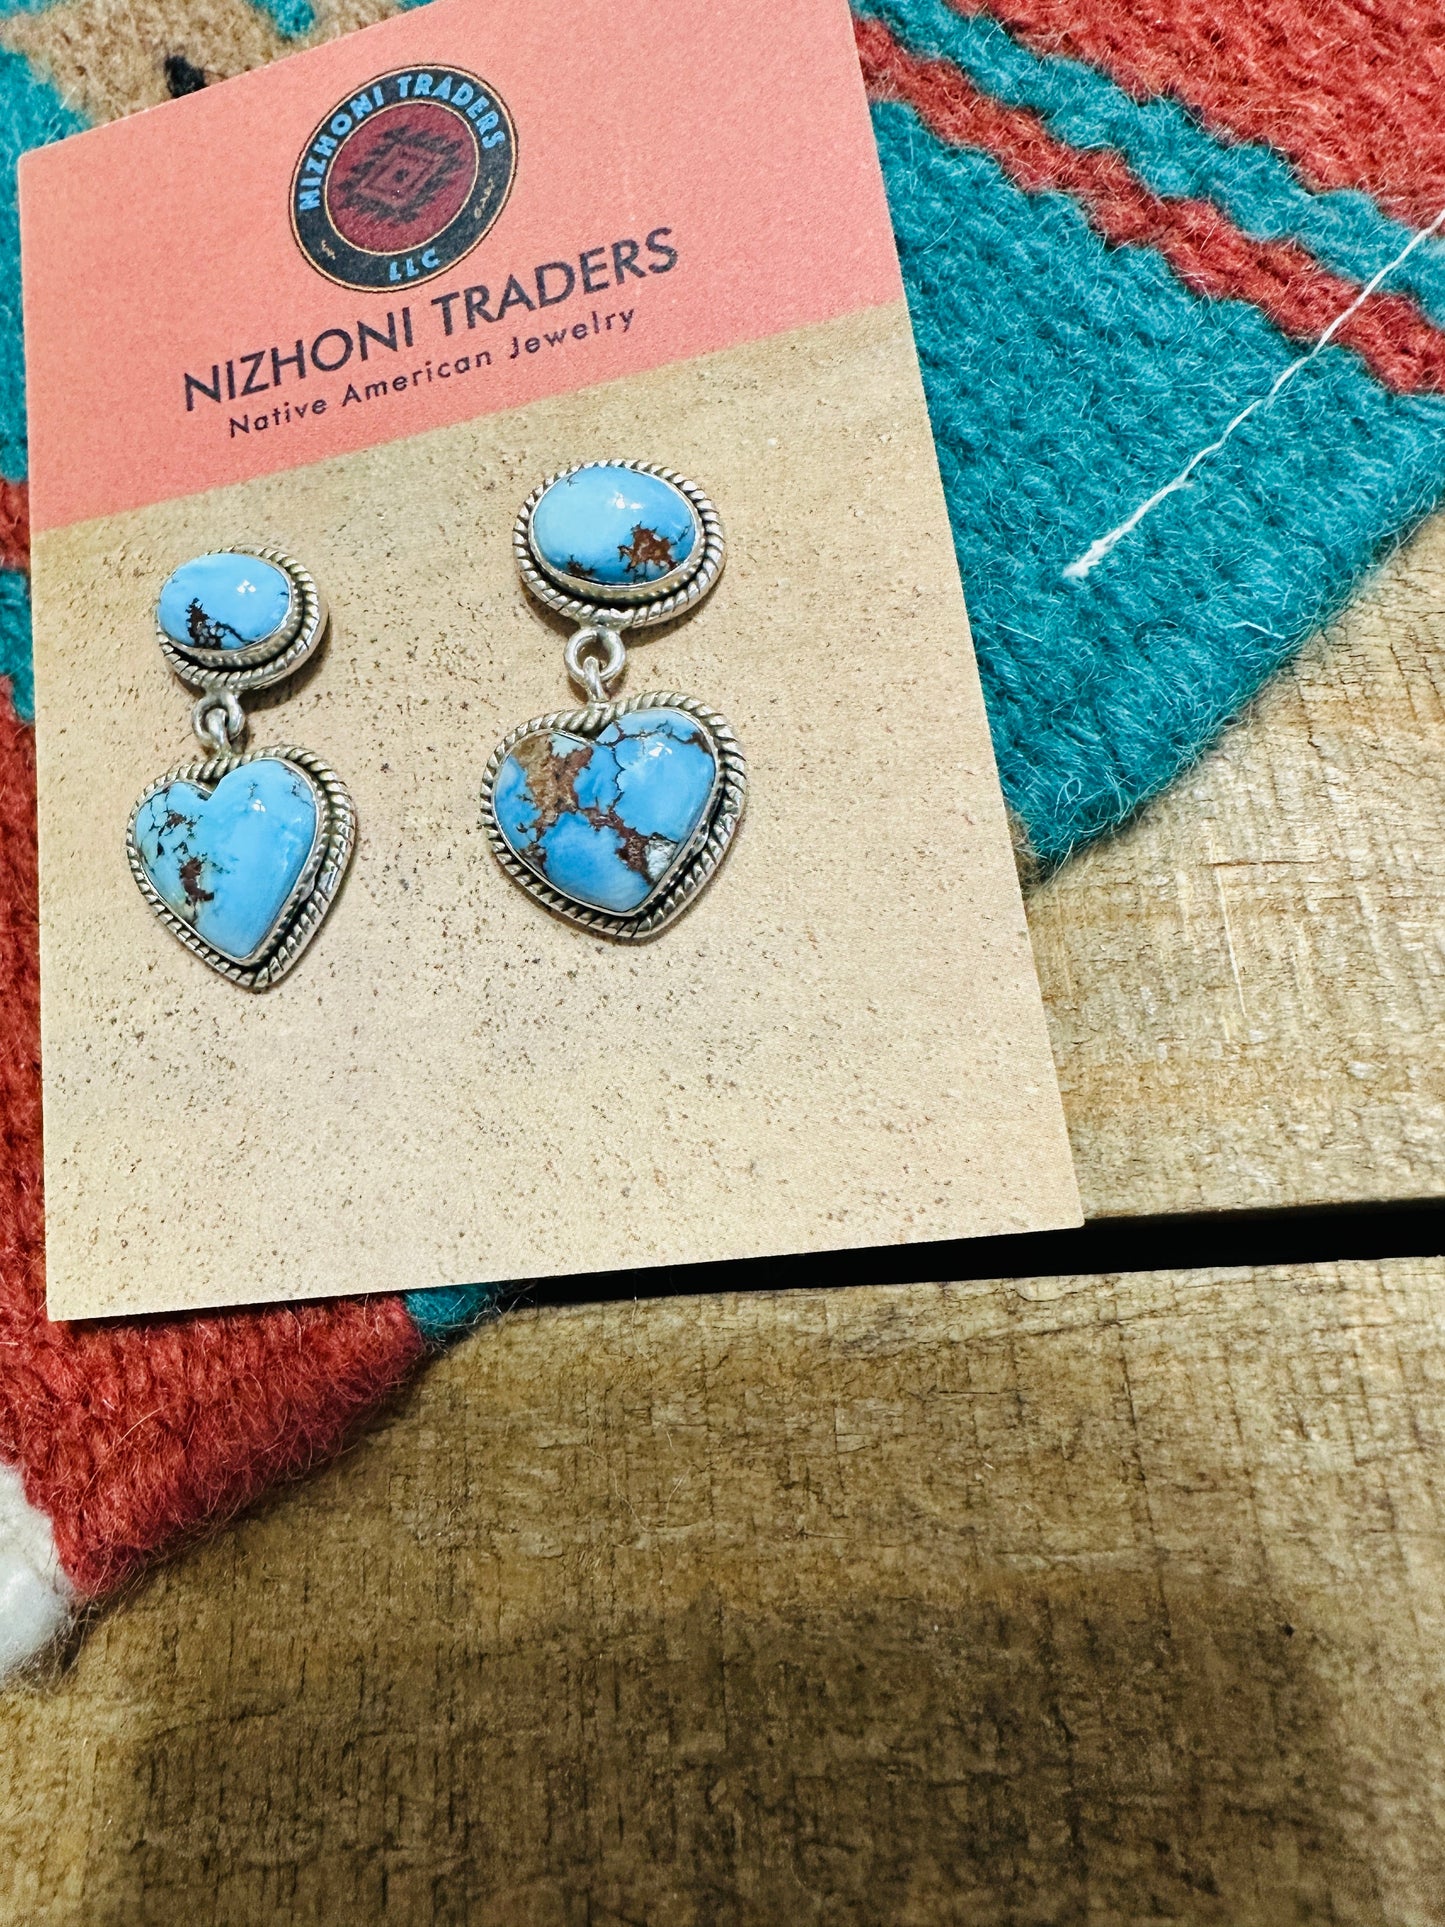 Handmade Golden Hills Turquoise & Sterling Silver Heart Dangle Earrings Signed Nizhoni